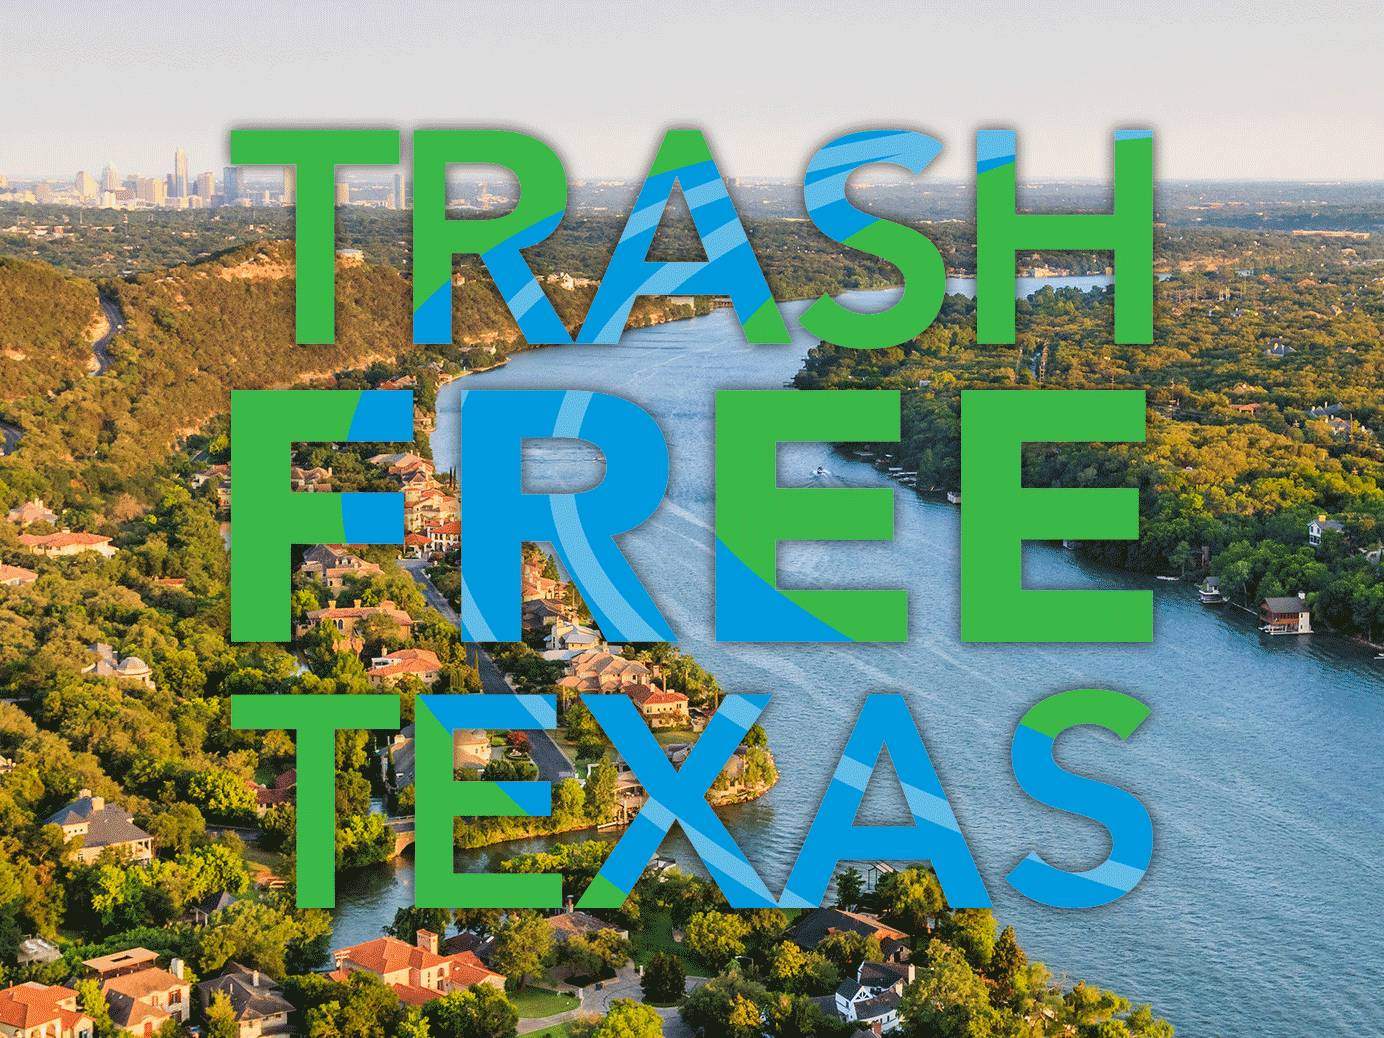 trash free texas logo